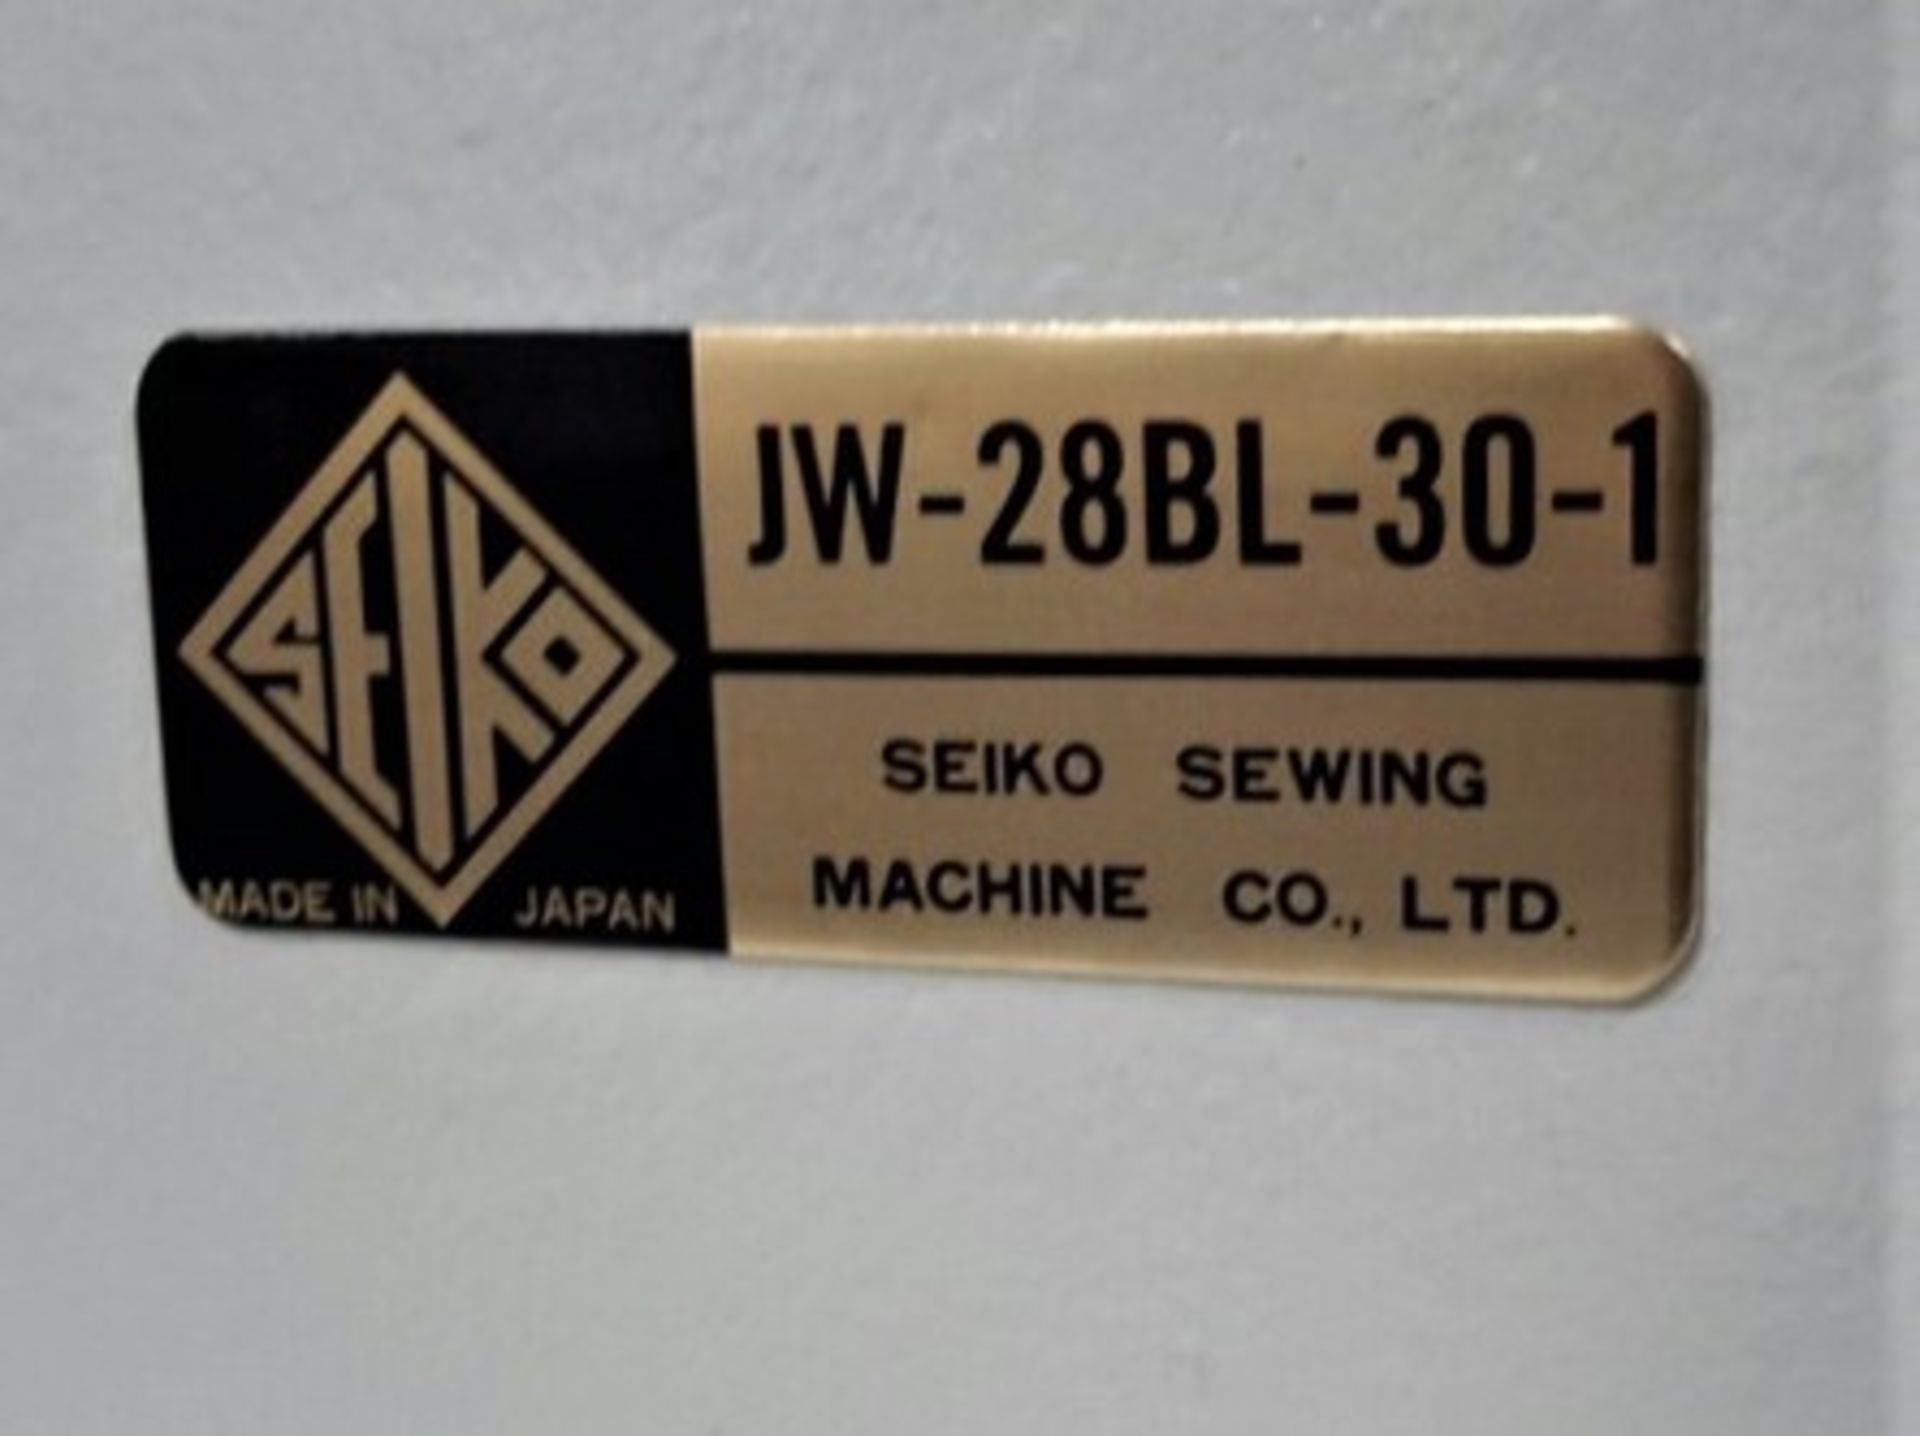 Seiko Lockstitch Sewing Machine - Image 14 of 14